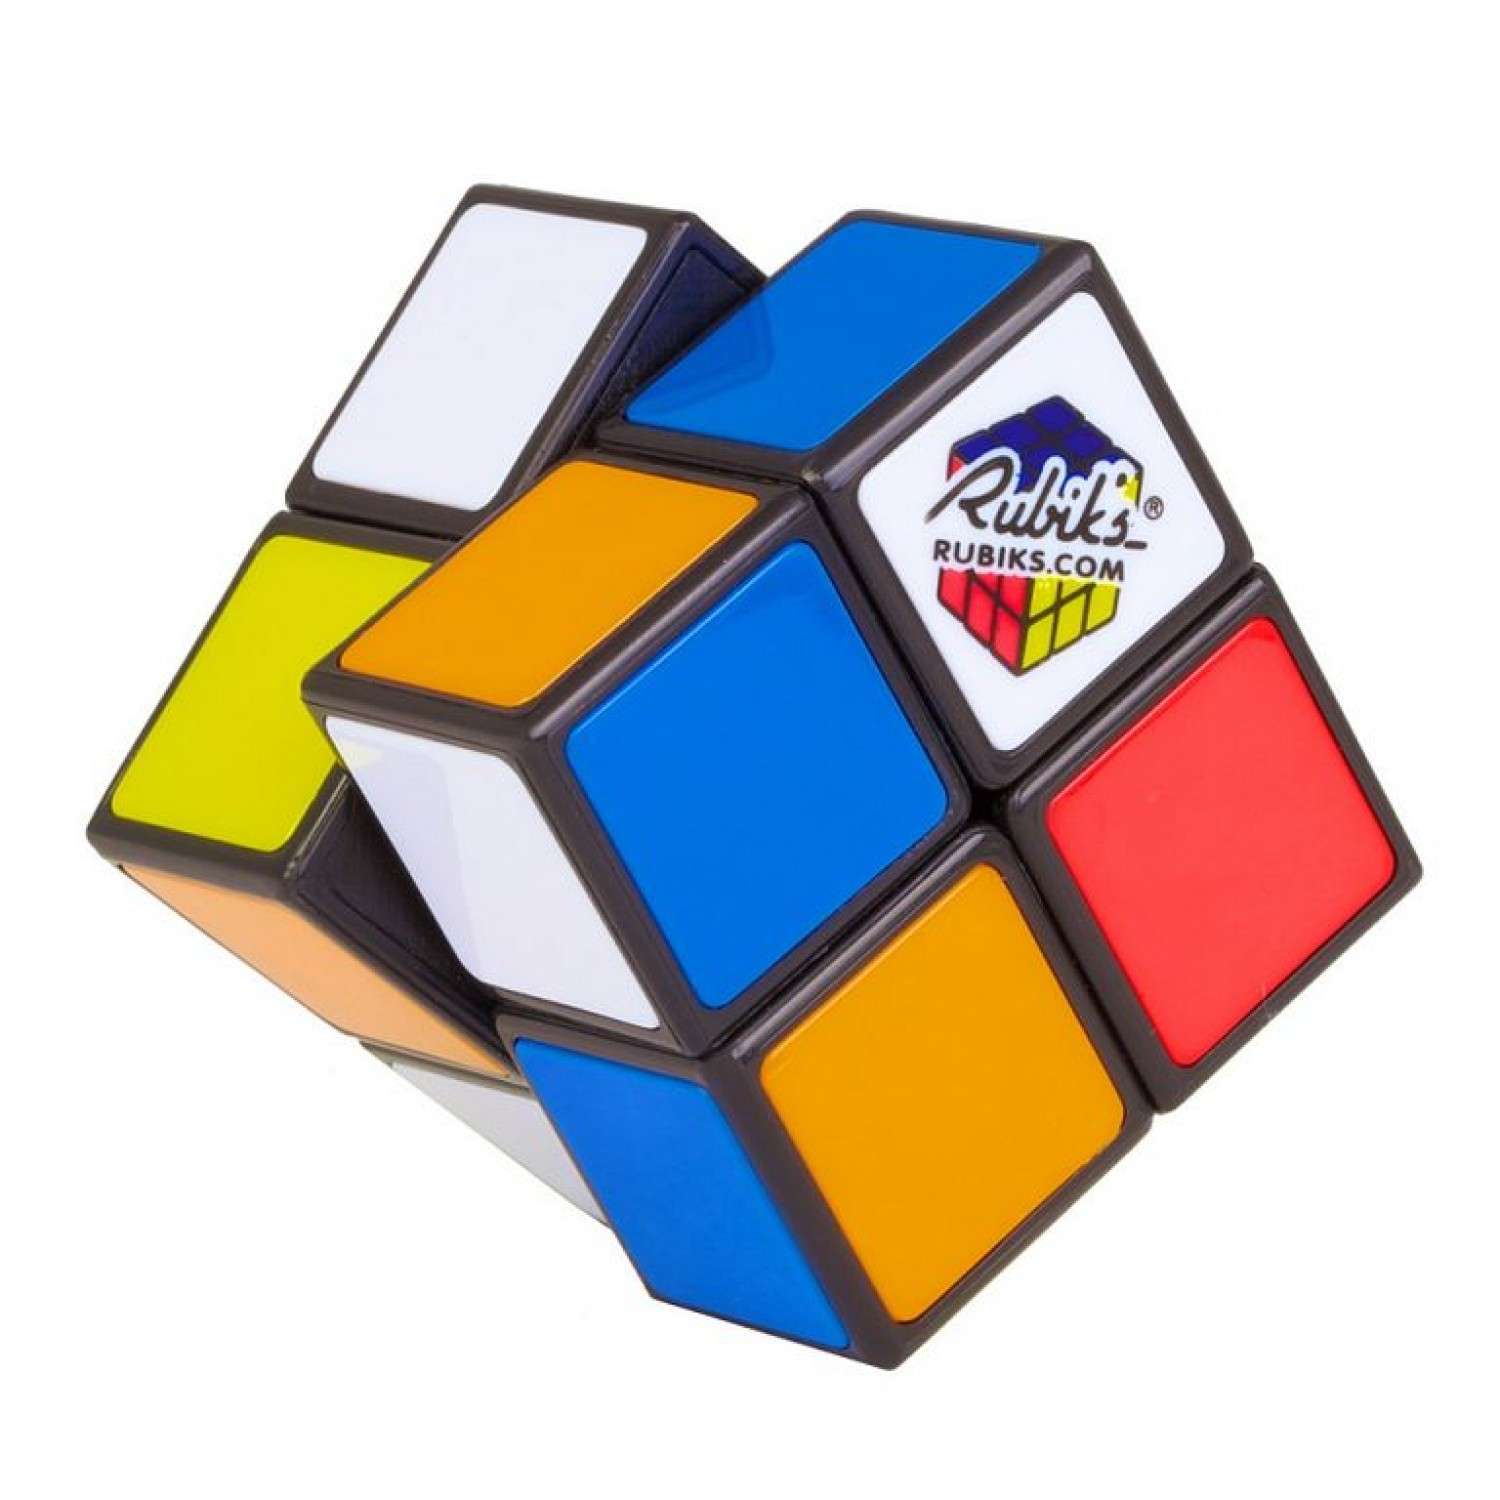 Страна кубика рубика. Рубикс кубик Рубика 2х2 46 мм. Головоломка "кубик Рубика 2х2". Оловоломка Rubik's "кубик Рубика 2х2". Кубик Рубика 2 на 2.